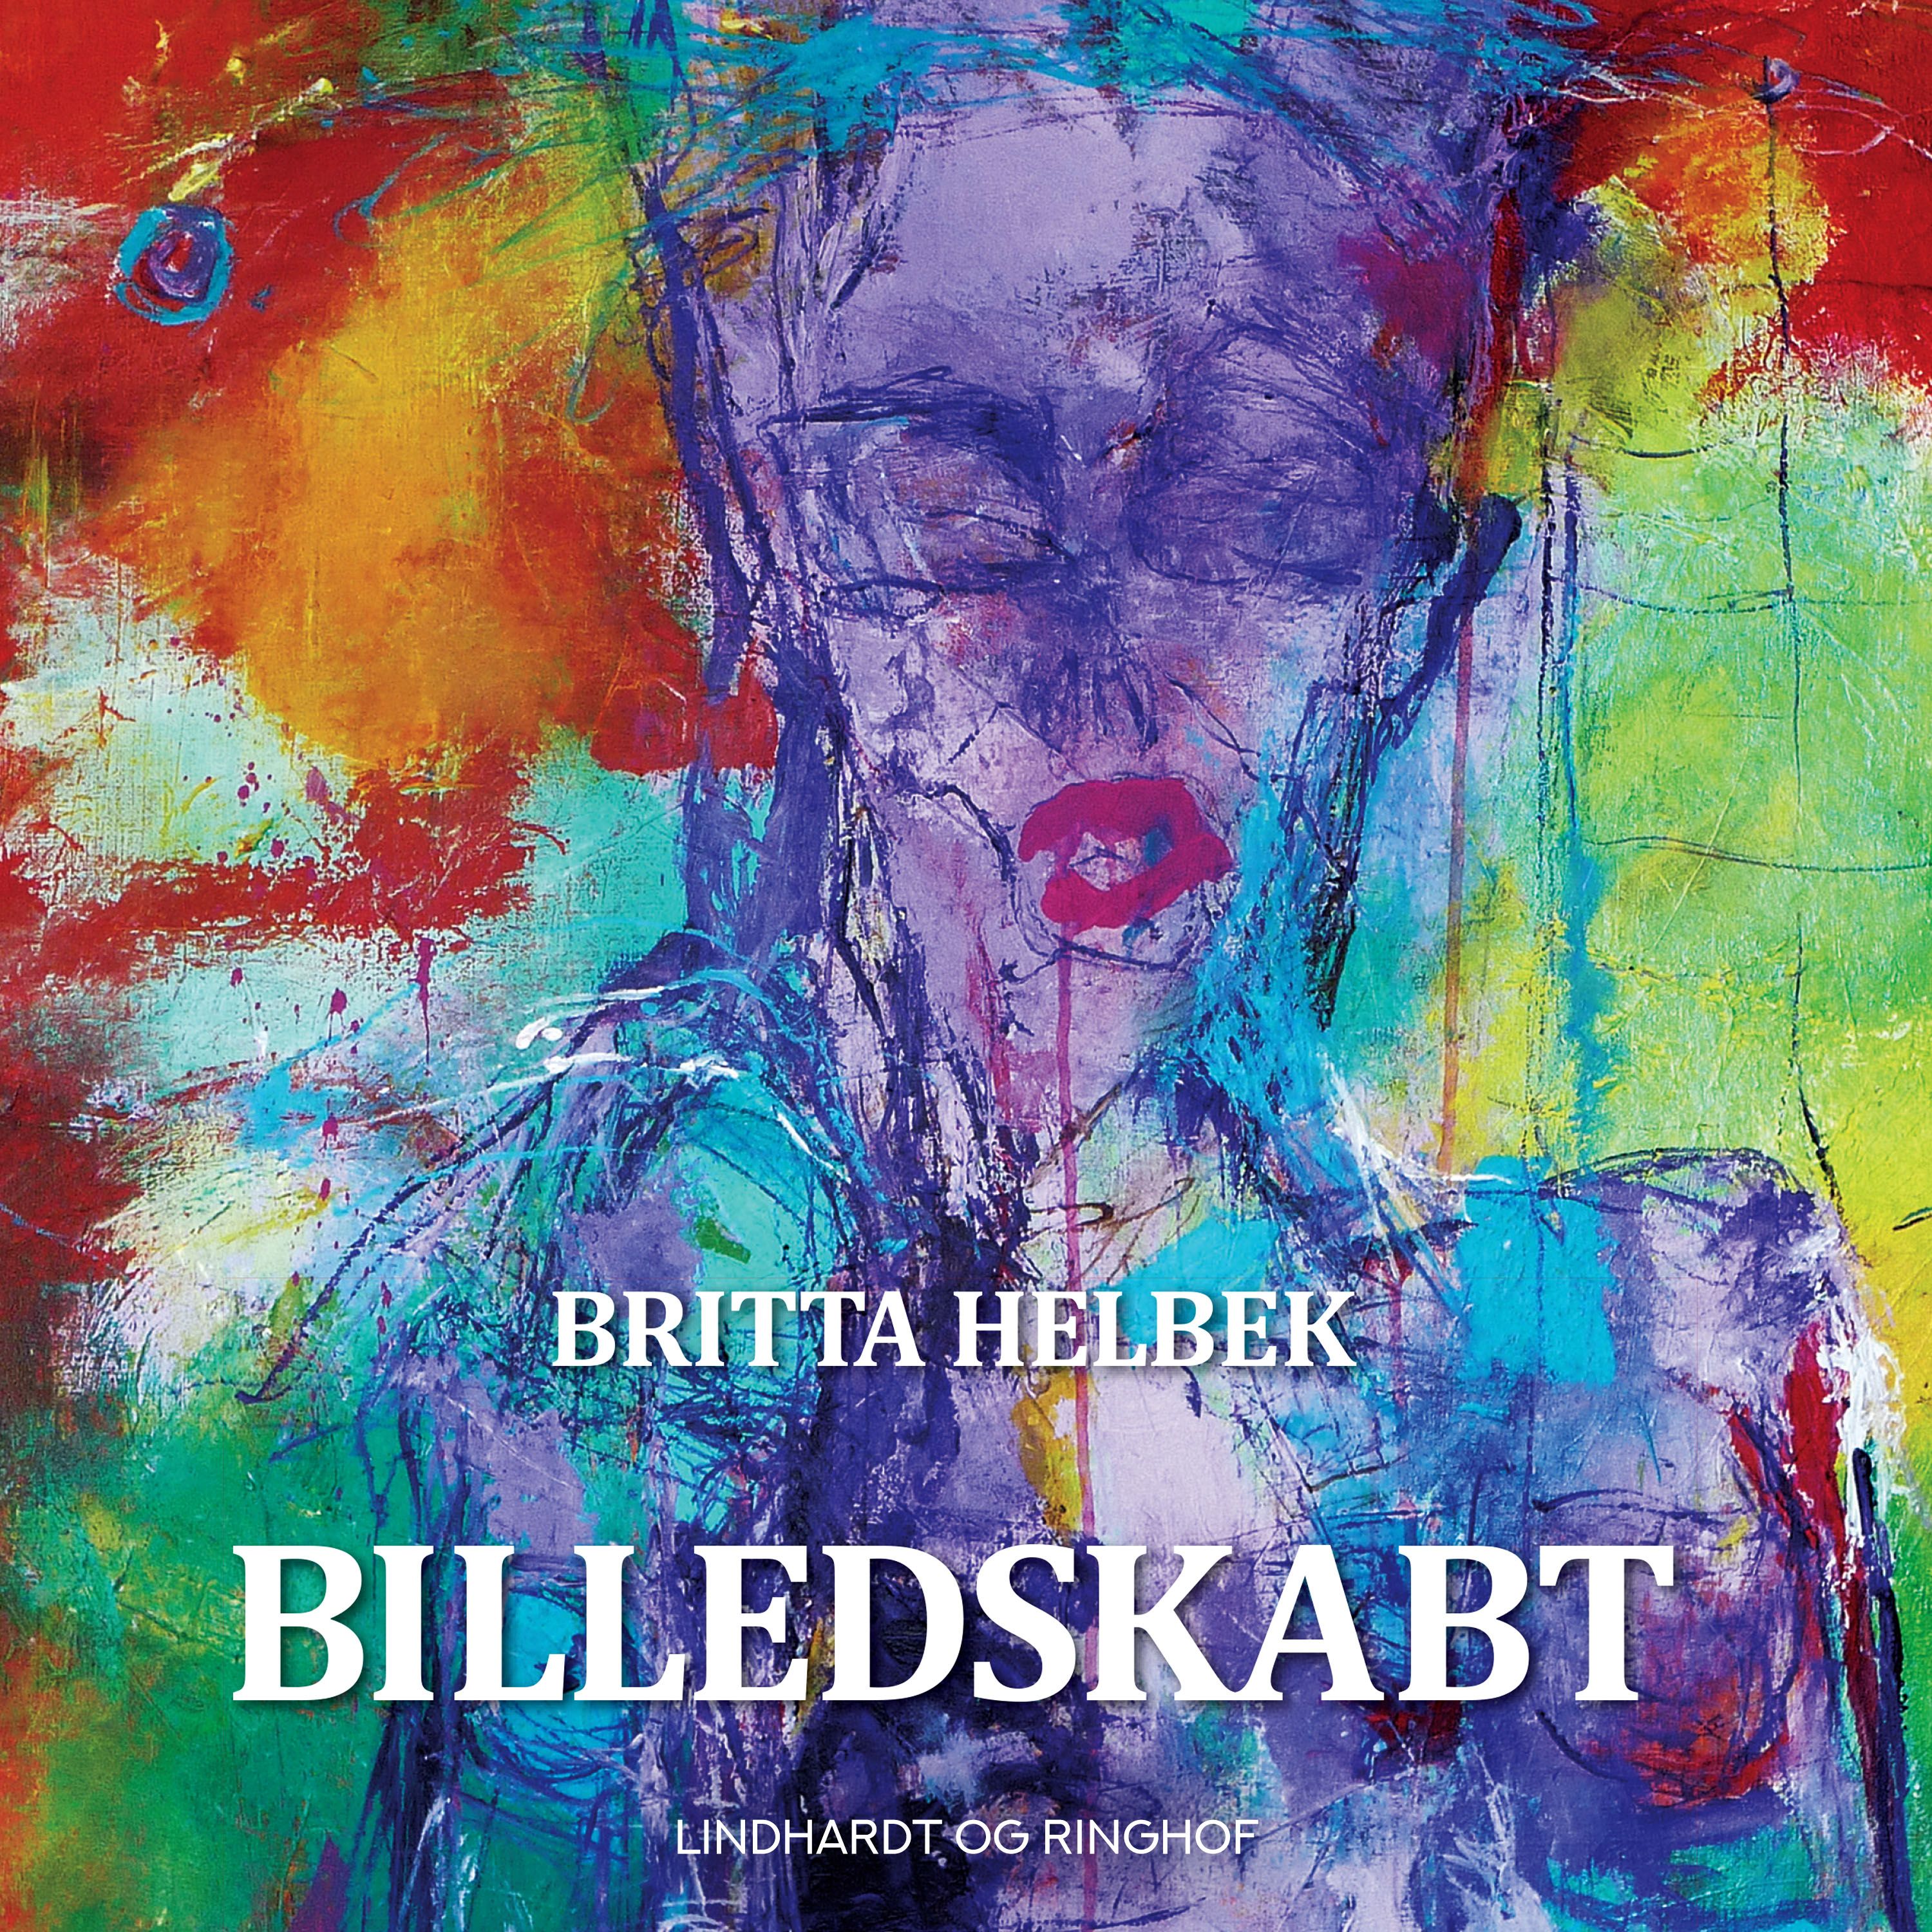 Billedskabt, ljudbok av Britta Helbek